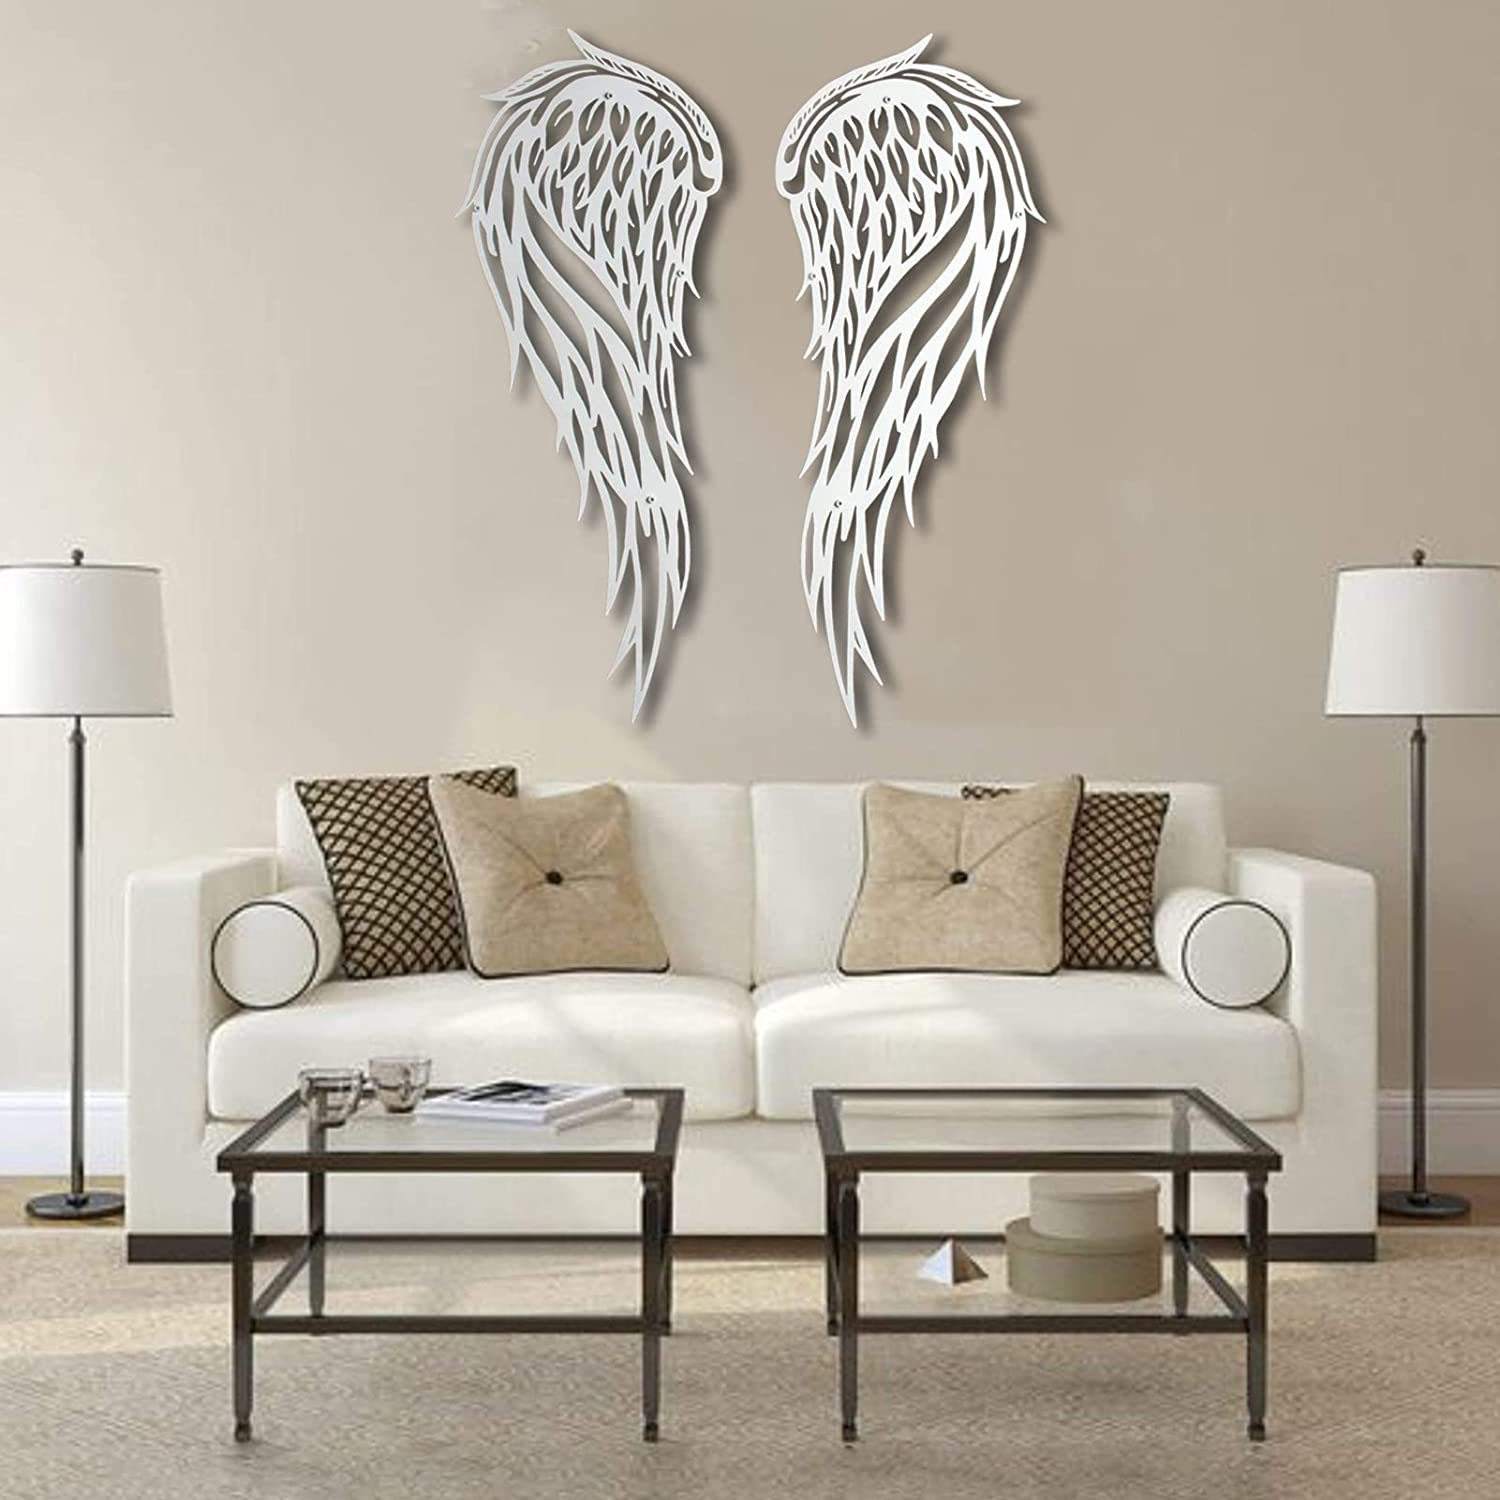 Indoor Outdoor Large Metal Angel Wings Wall Decor For Home Bedroom Living Room Garden Office